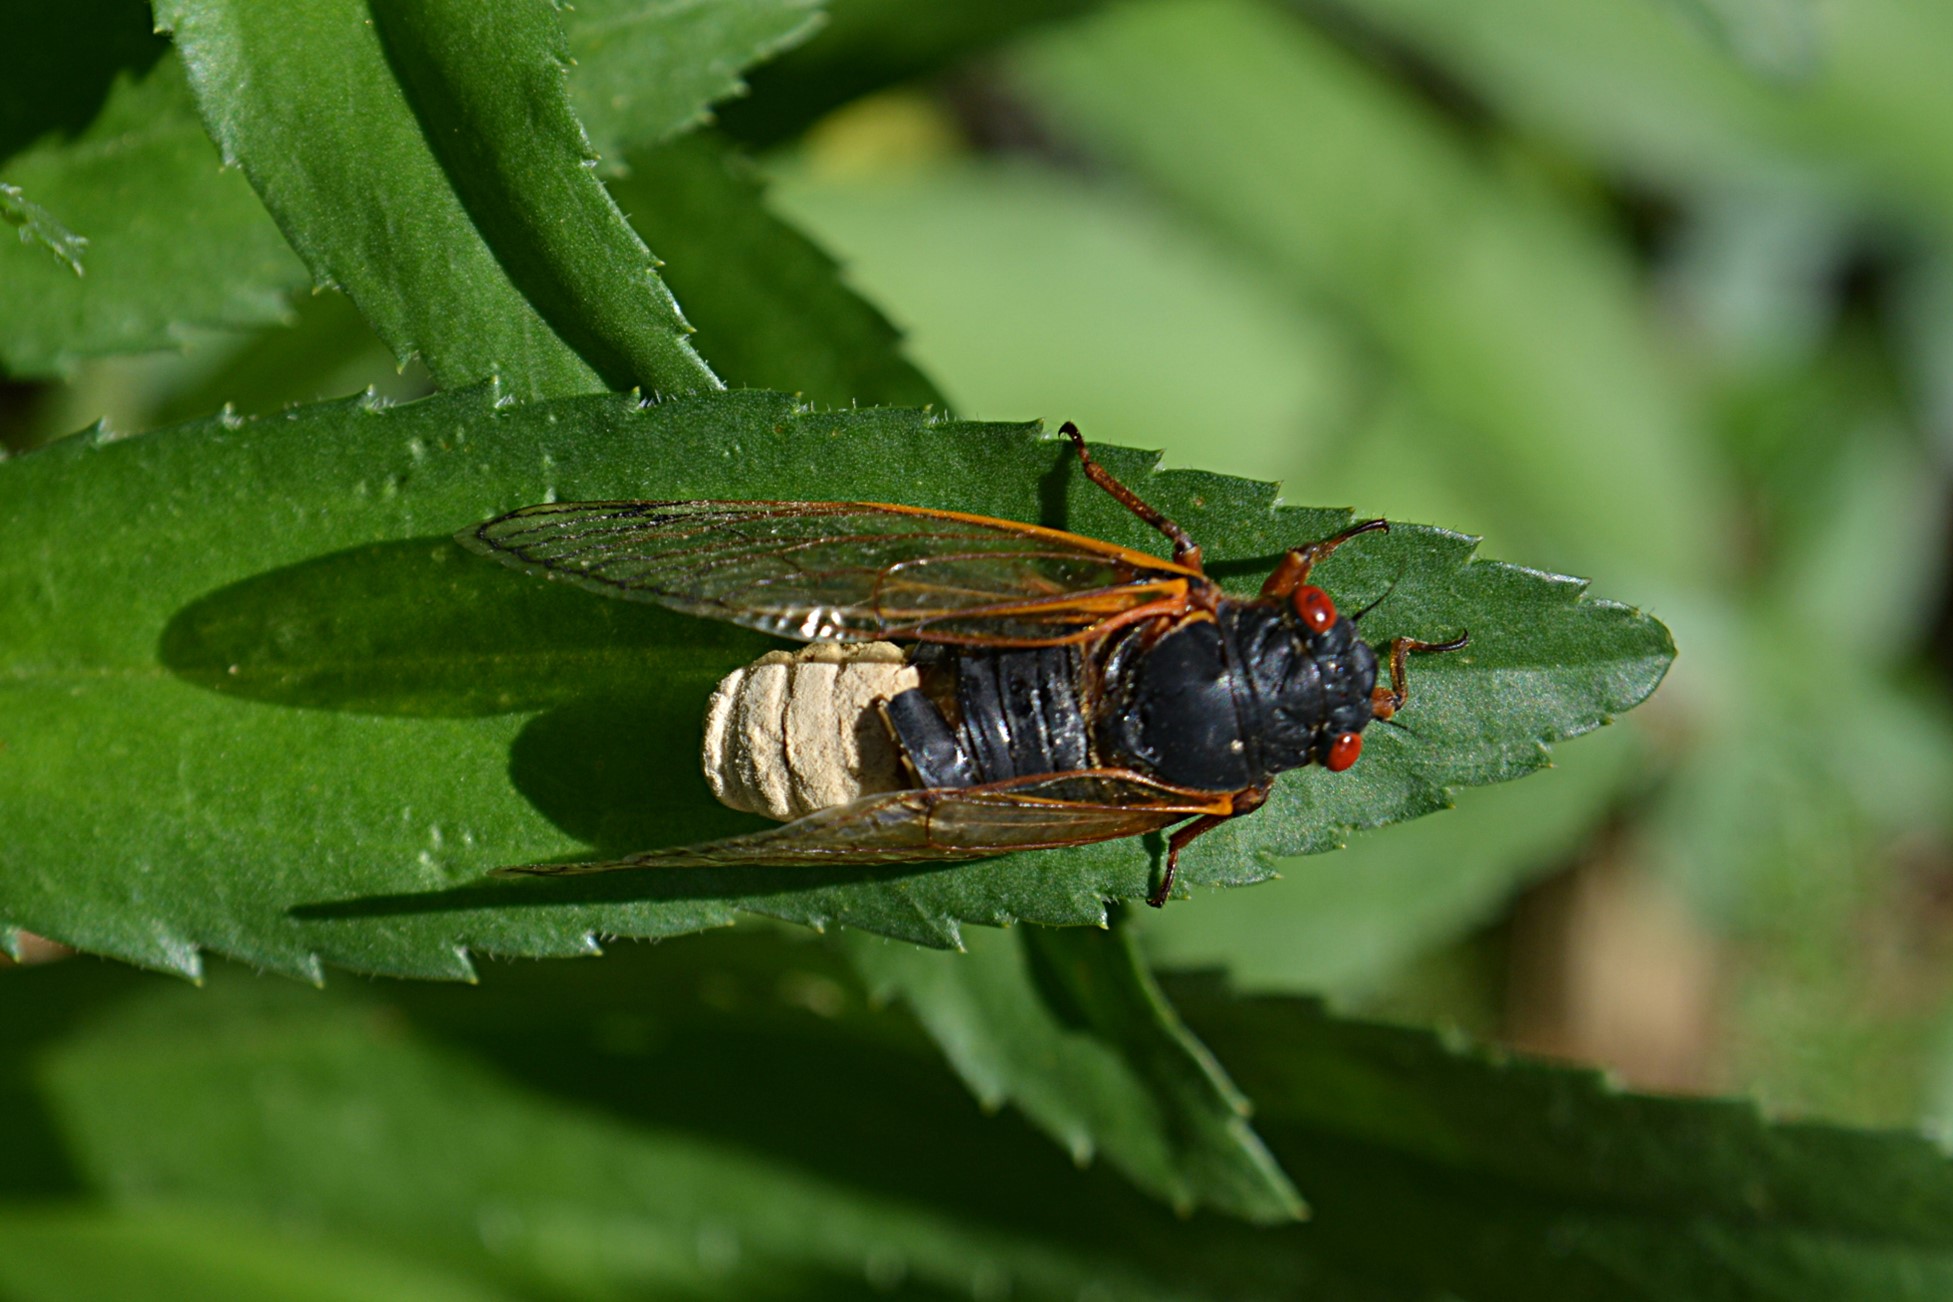 A live periodical cicada sitting on a leaf